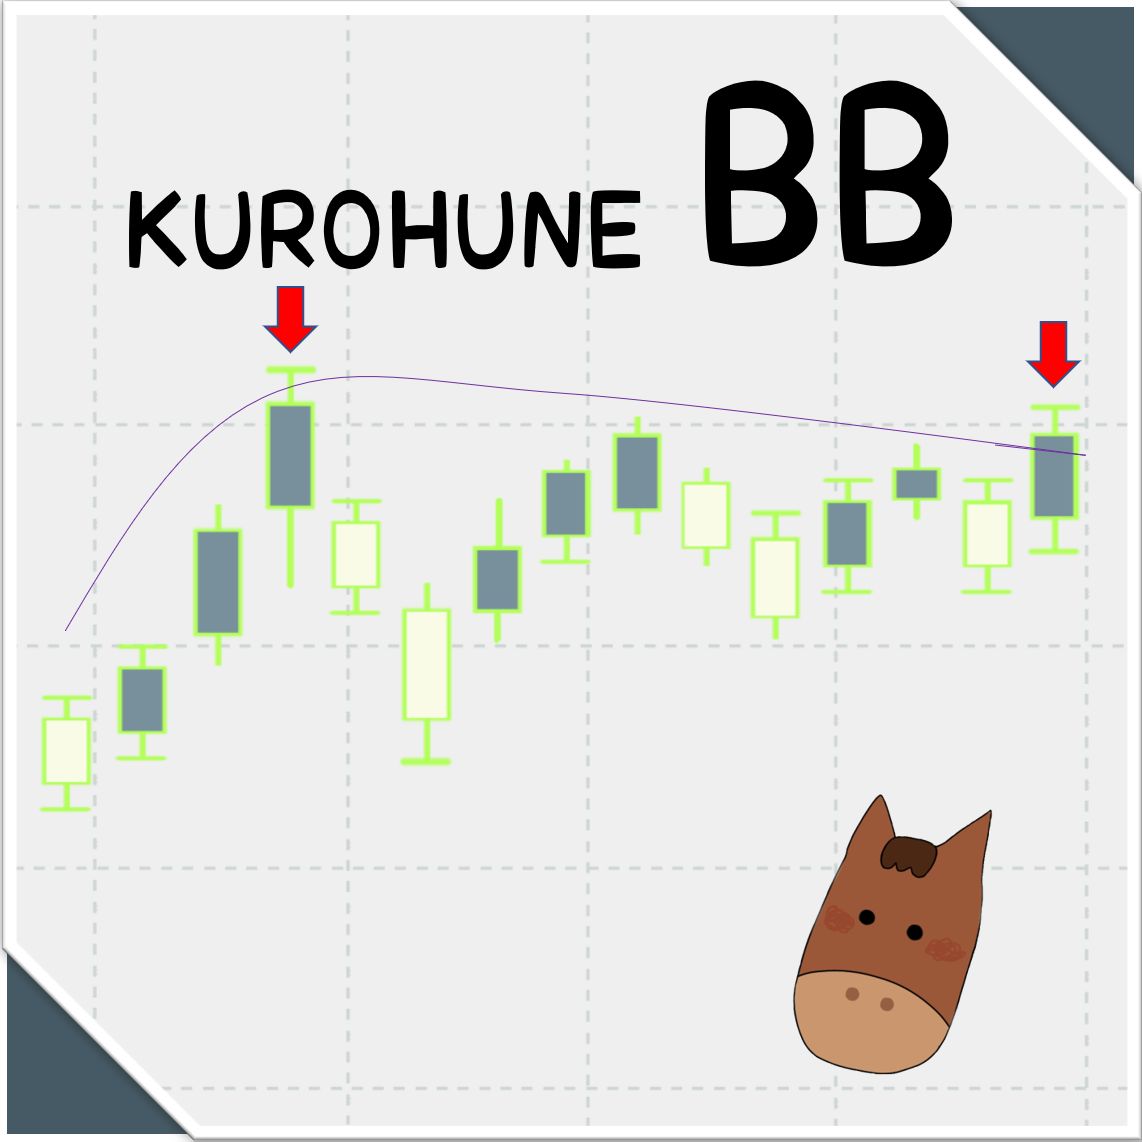 KUROHUNE_BB Indicators/E-books